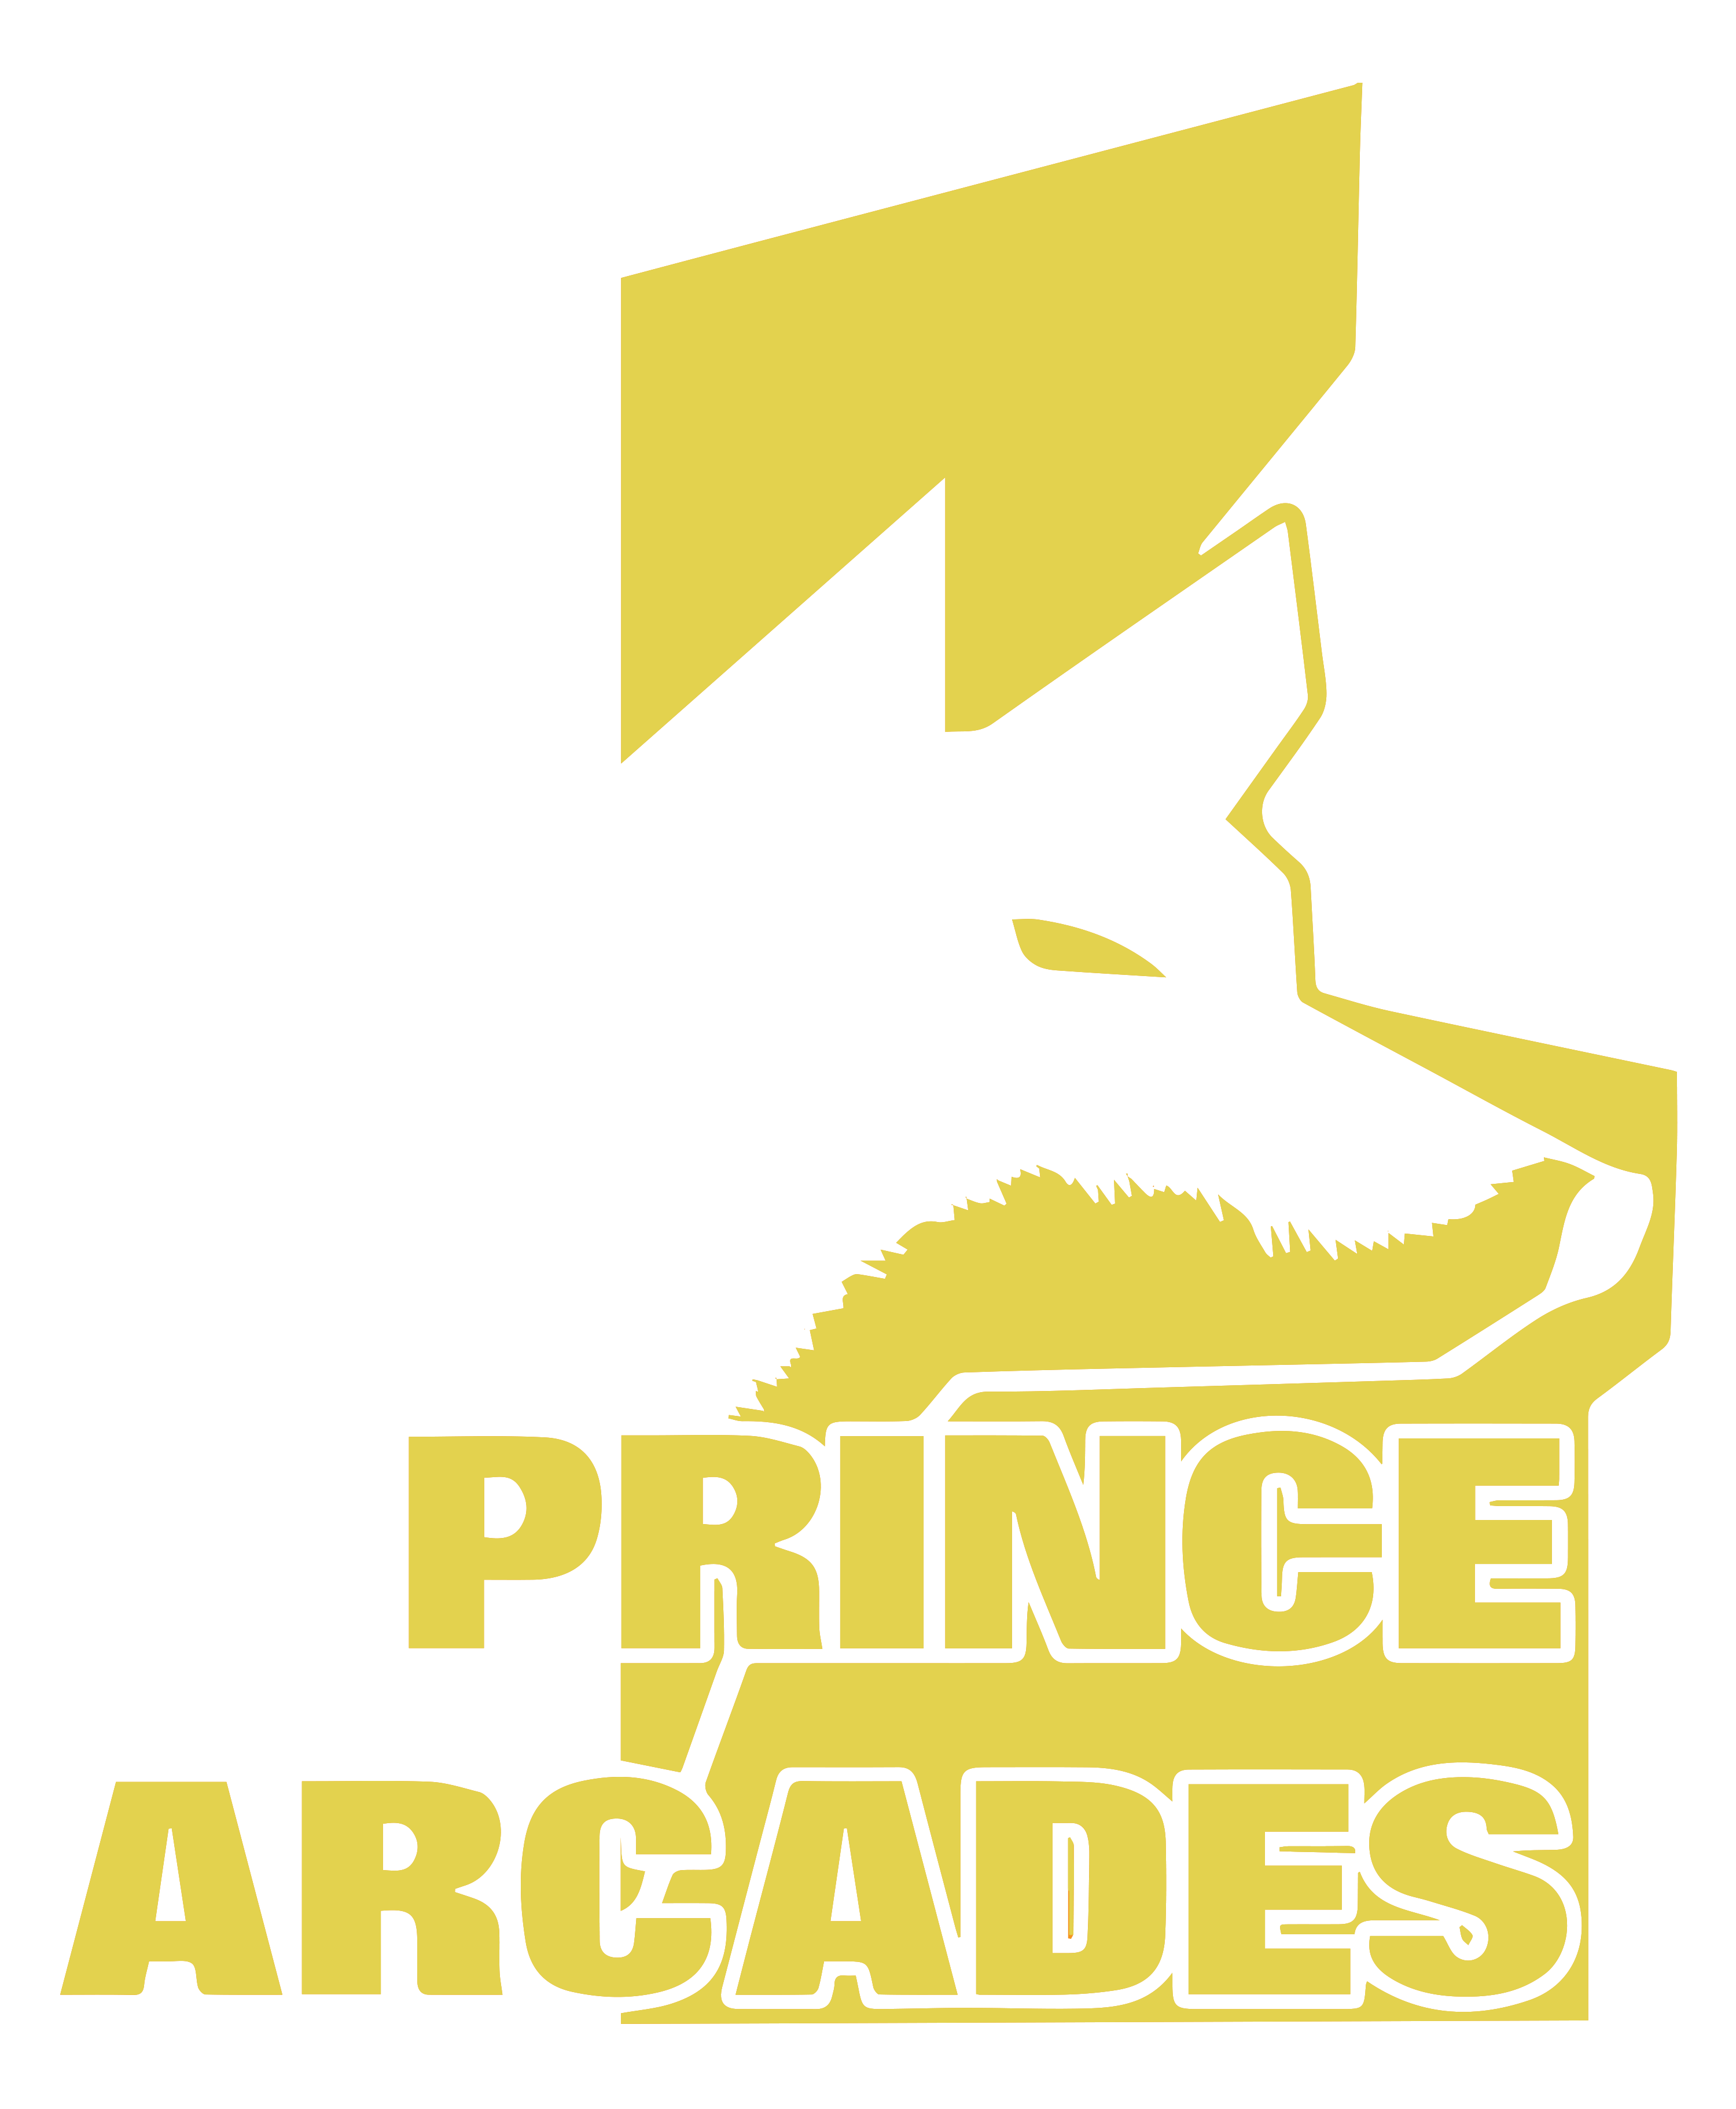 Prince Arcades